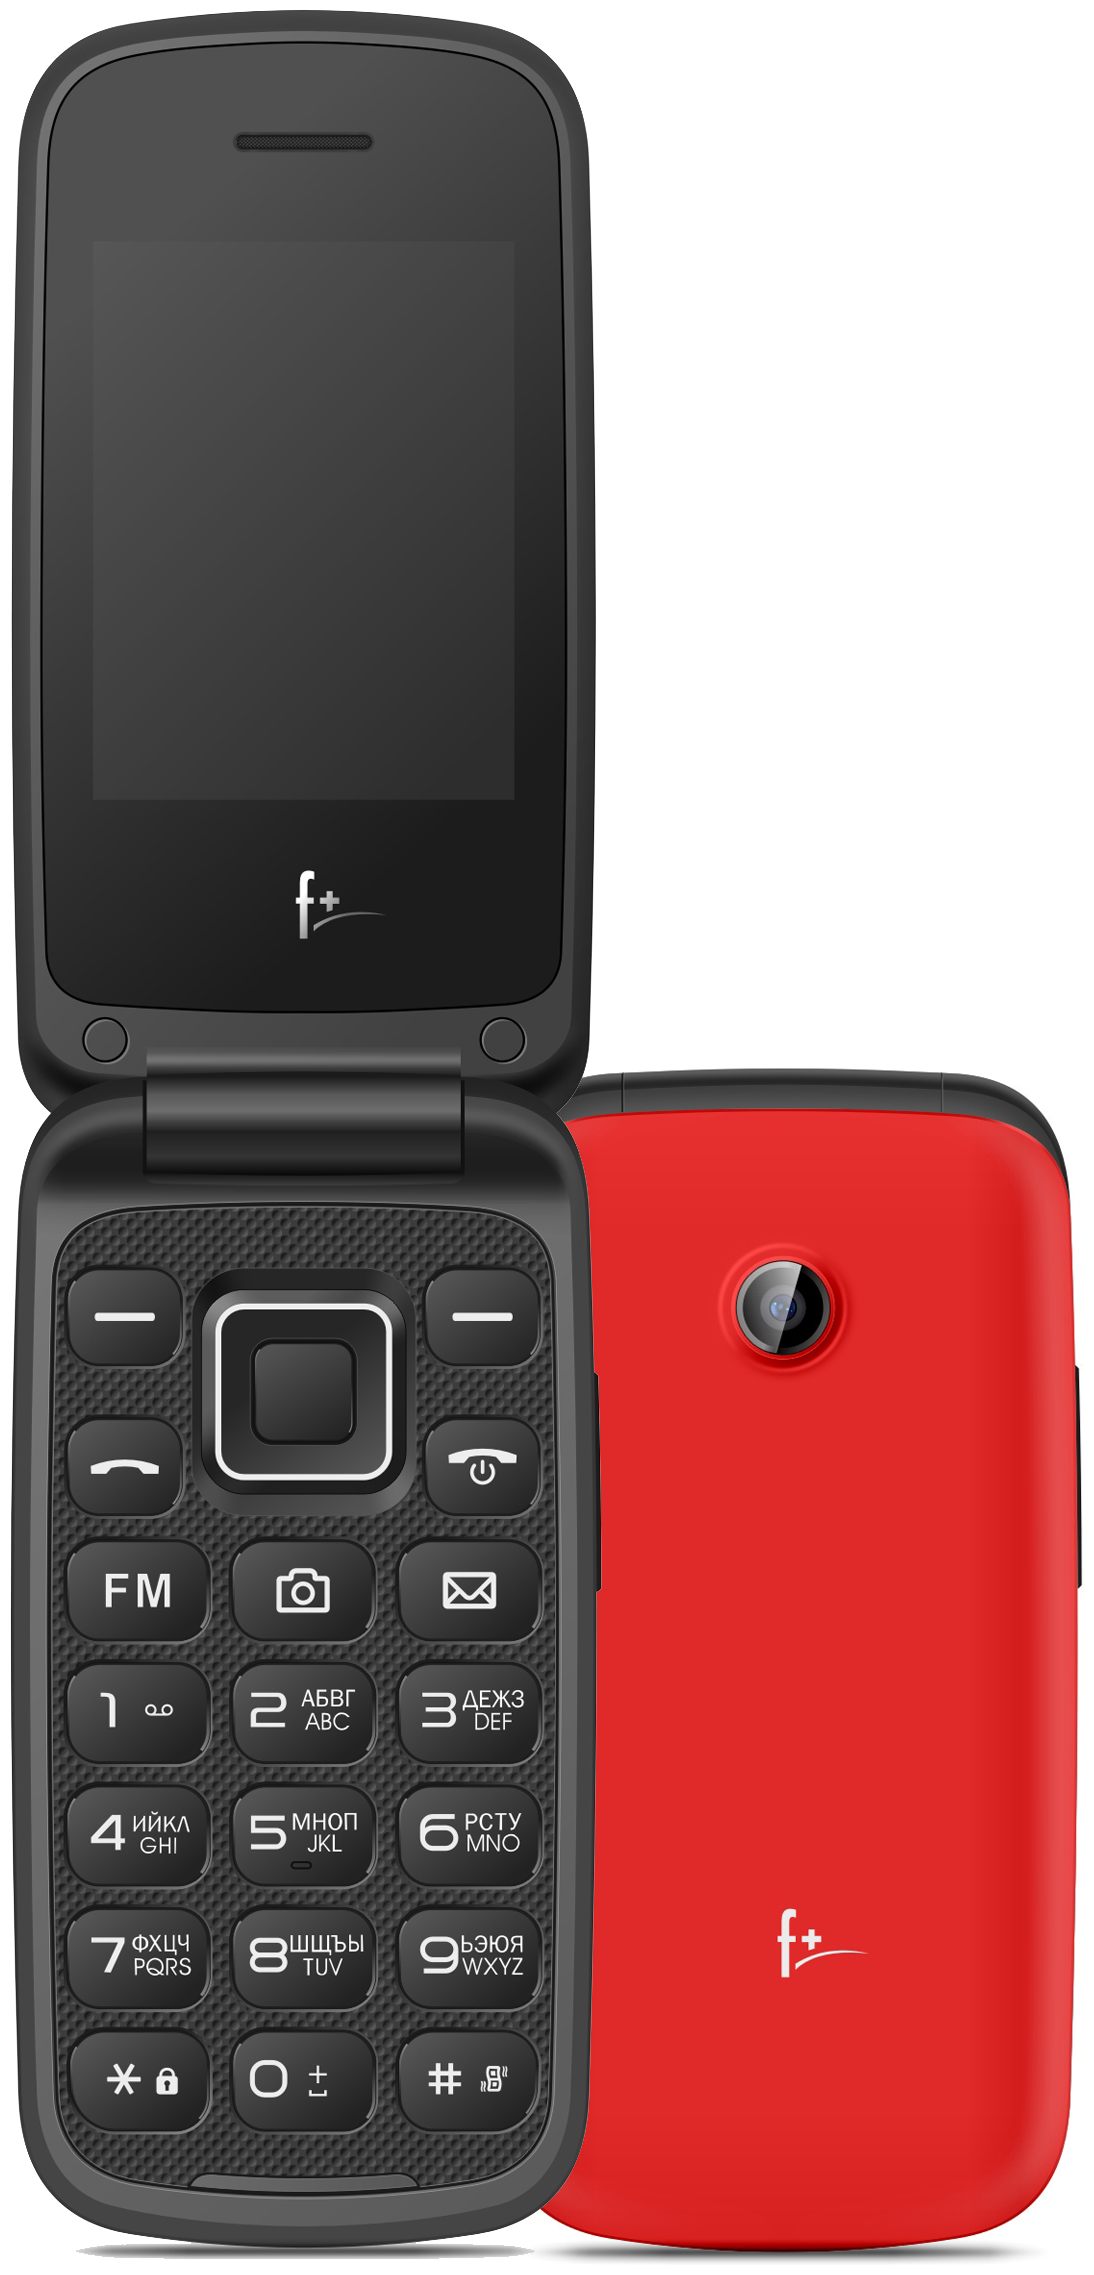 Мобильный телефон F+ Flip2, 2.4" 320x240 TFT, 32Mb RAM, 32Mb, BT, 1xCam, 2-Sim, 750 мА·ч, micro-USB, красный (Flip2 Red)